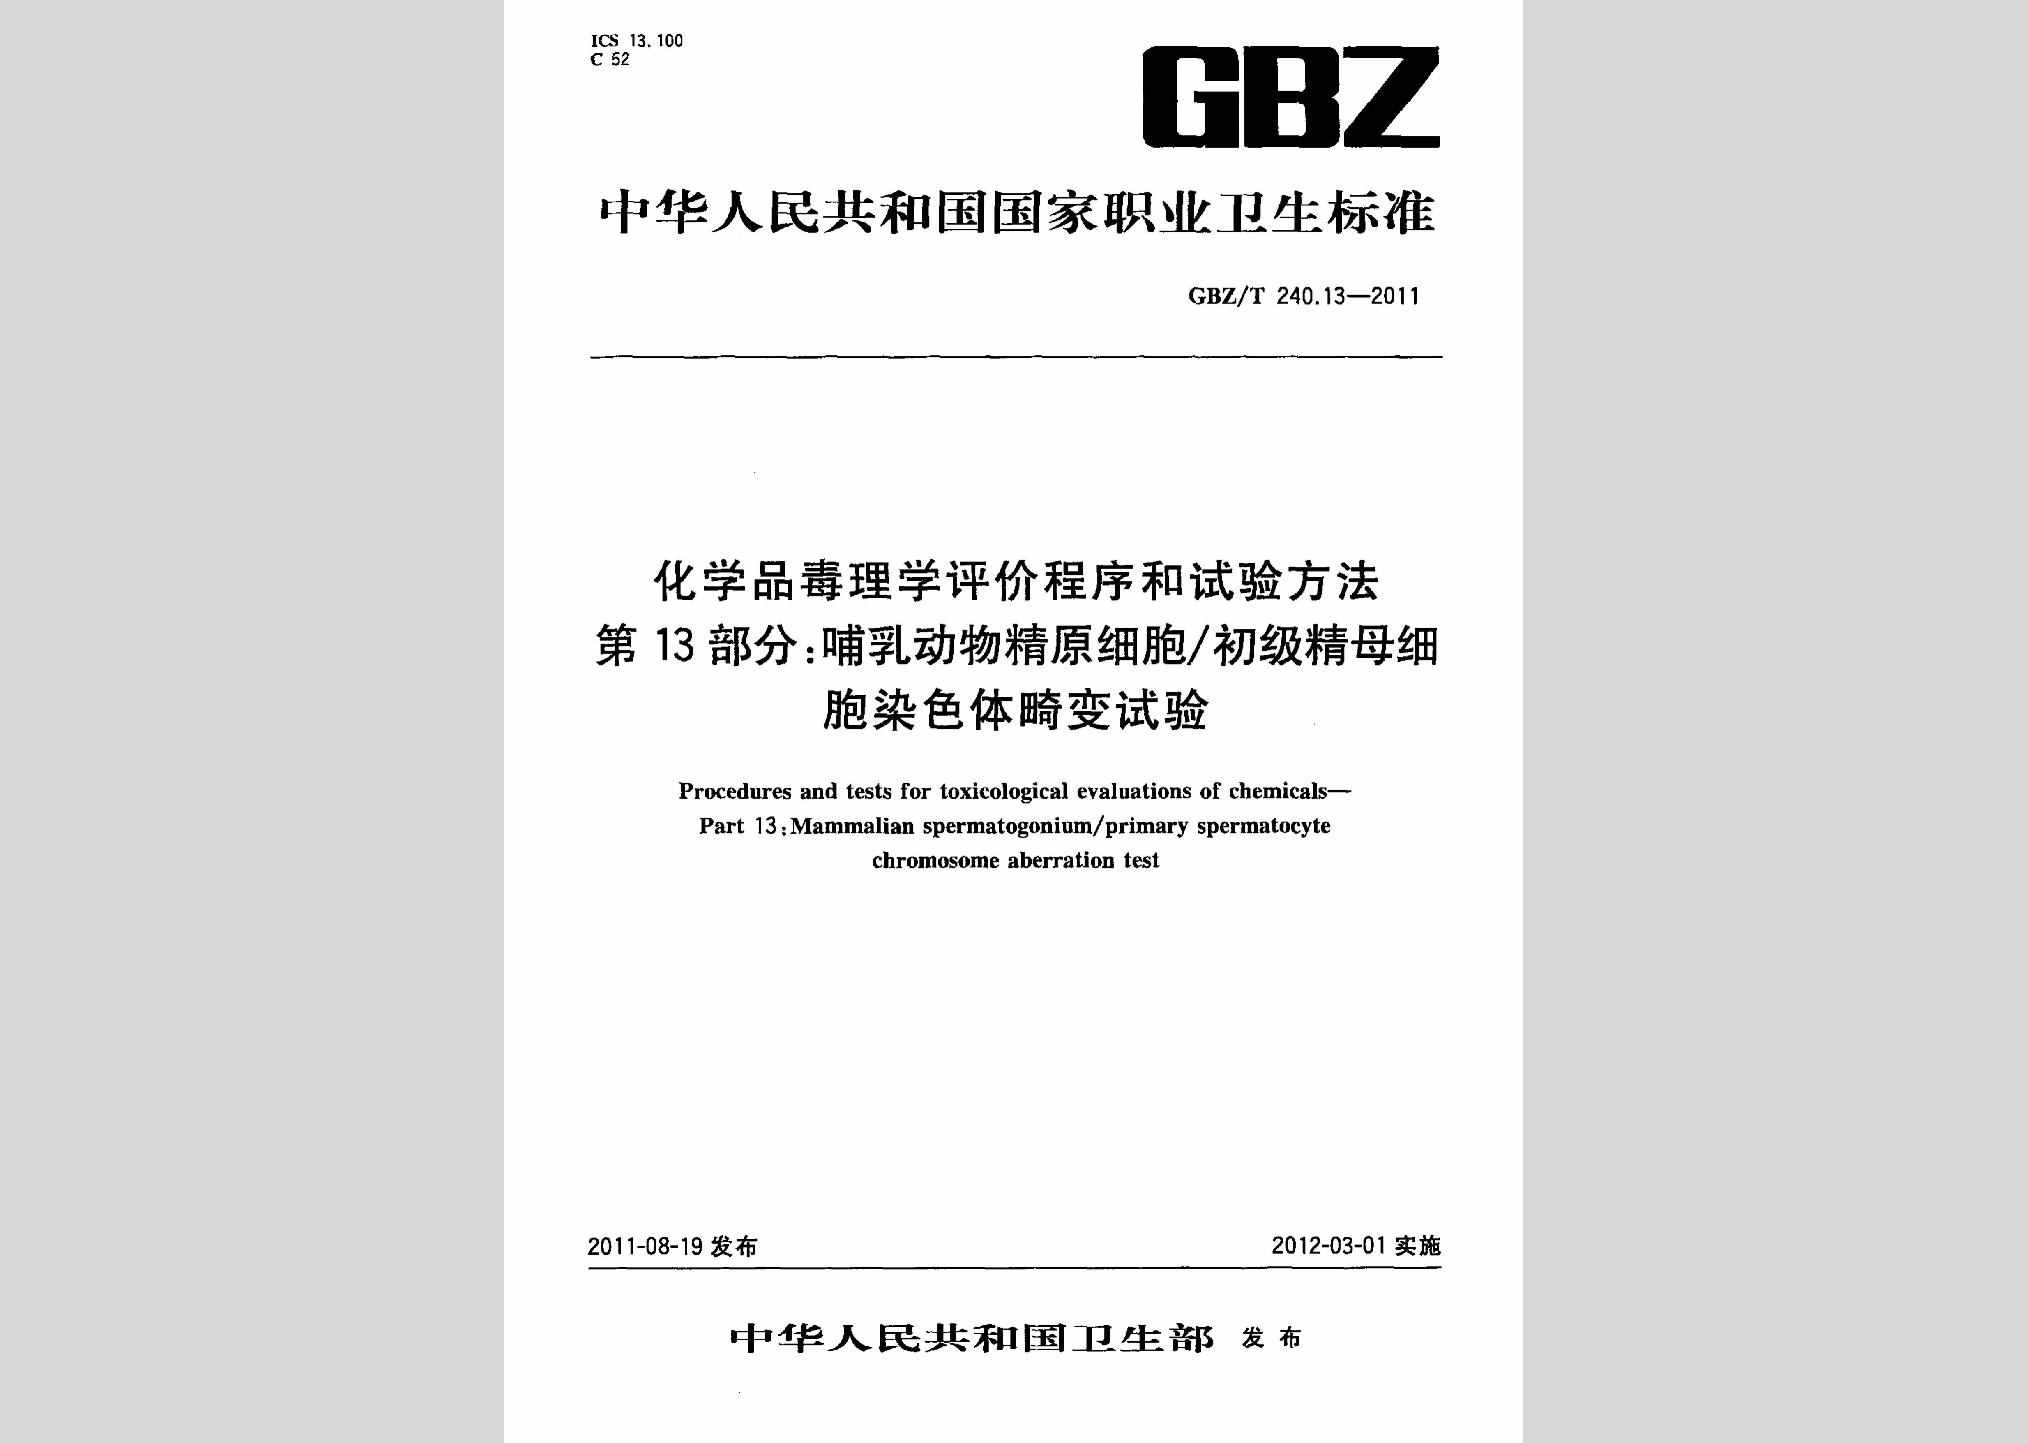 GBZ/T240.13-2011：化学品毒理学评价程序和试验方法第13部分:哺乳动物精原细胞/初级精母细胞染色体畸变试验